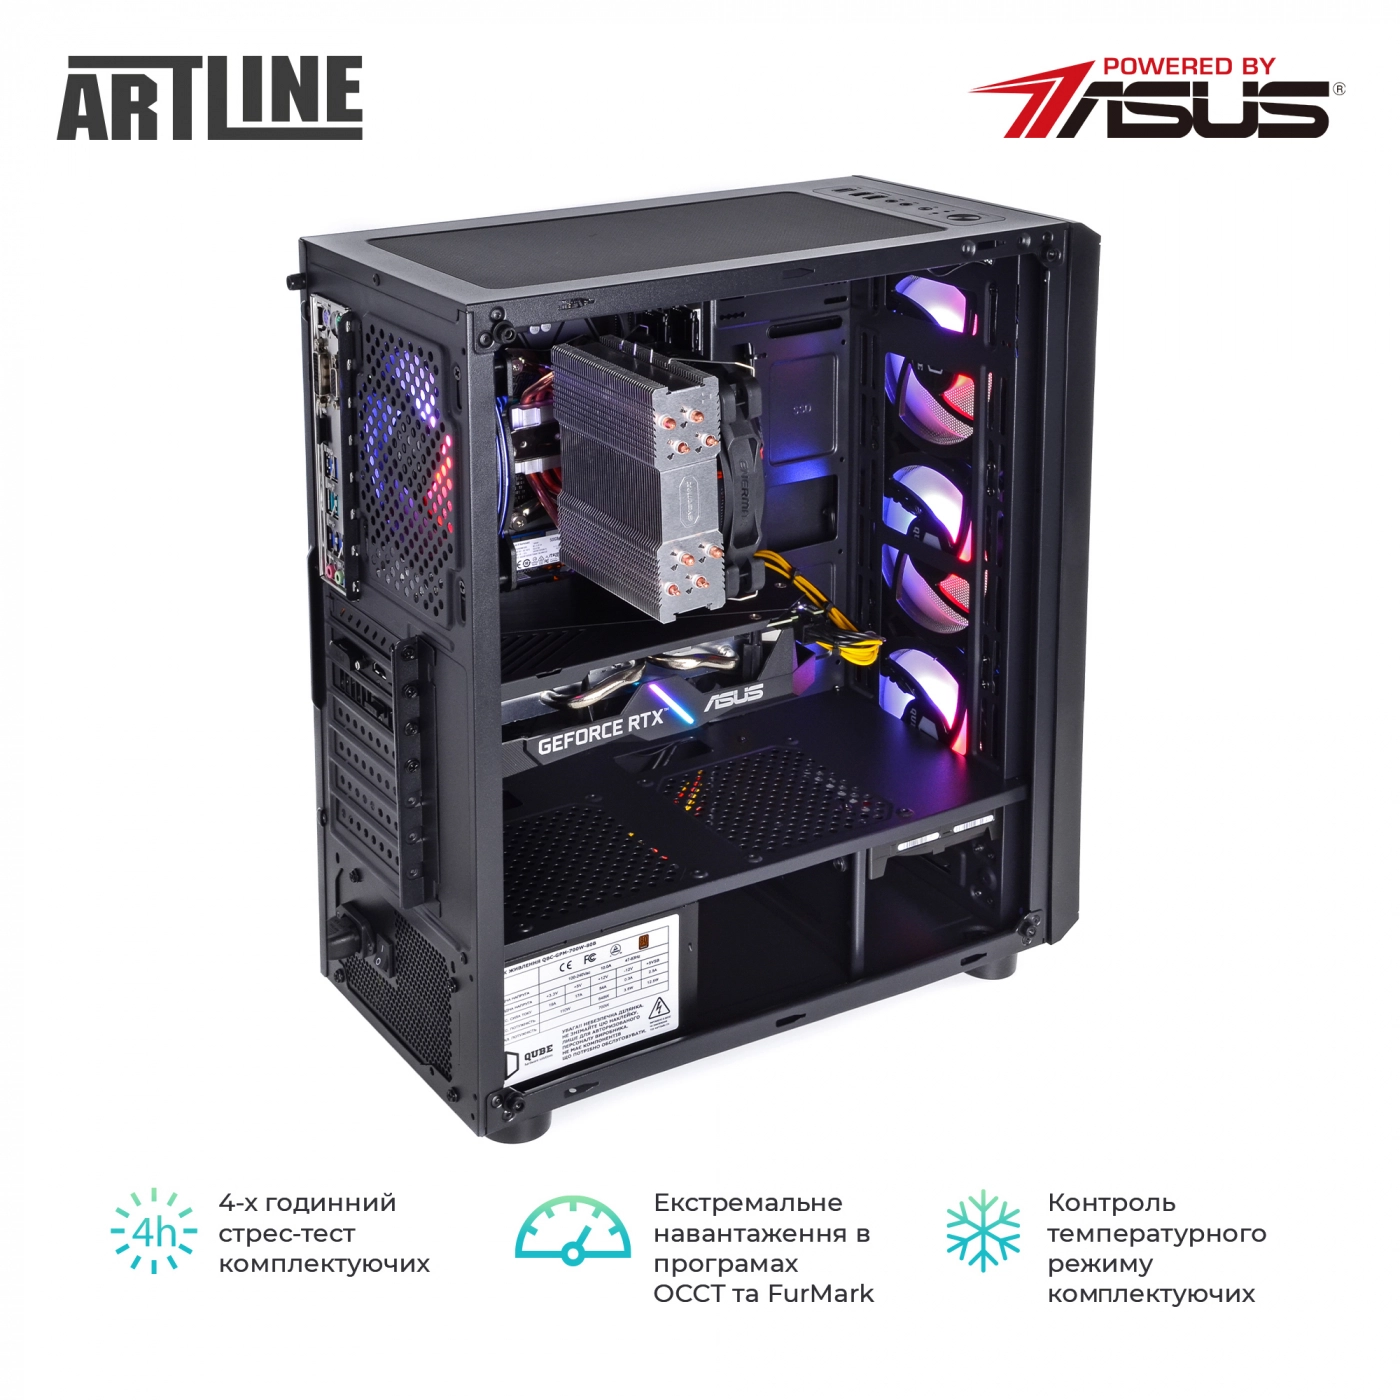 Купить Компьютер ARTLINE Gaming X63v21 - фото 6